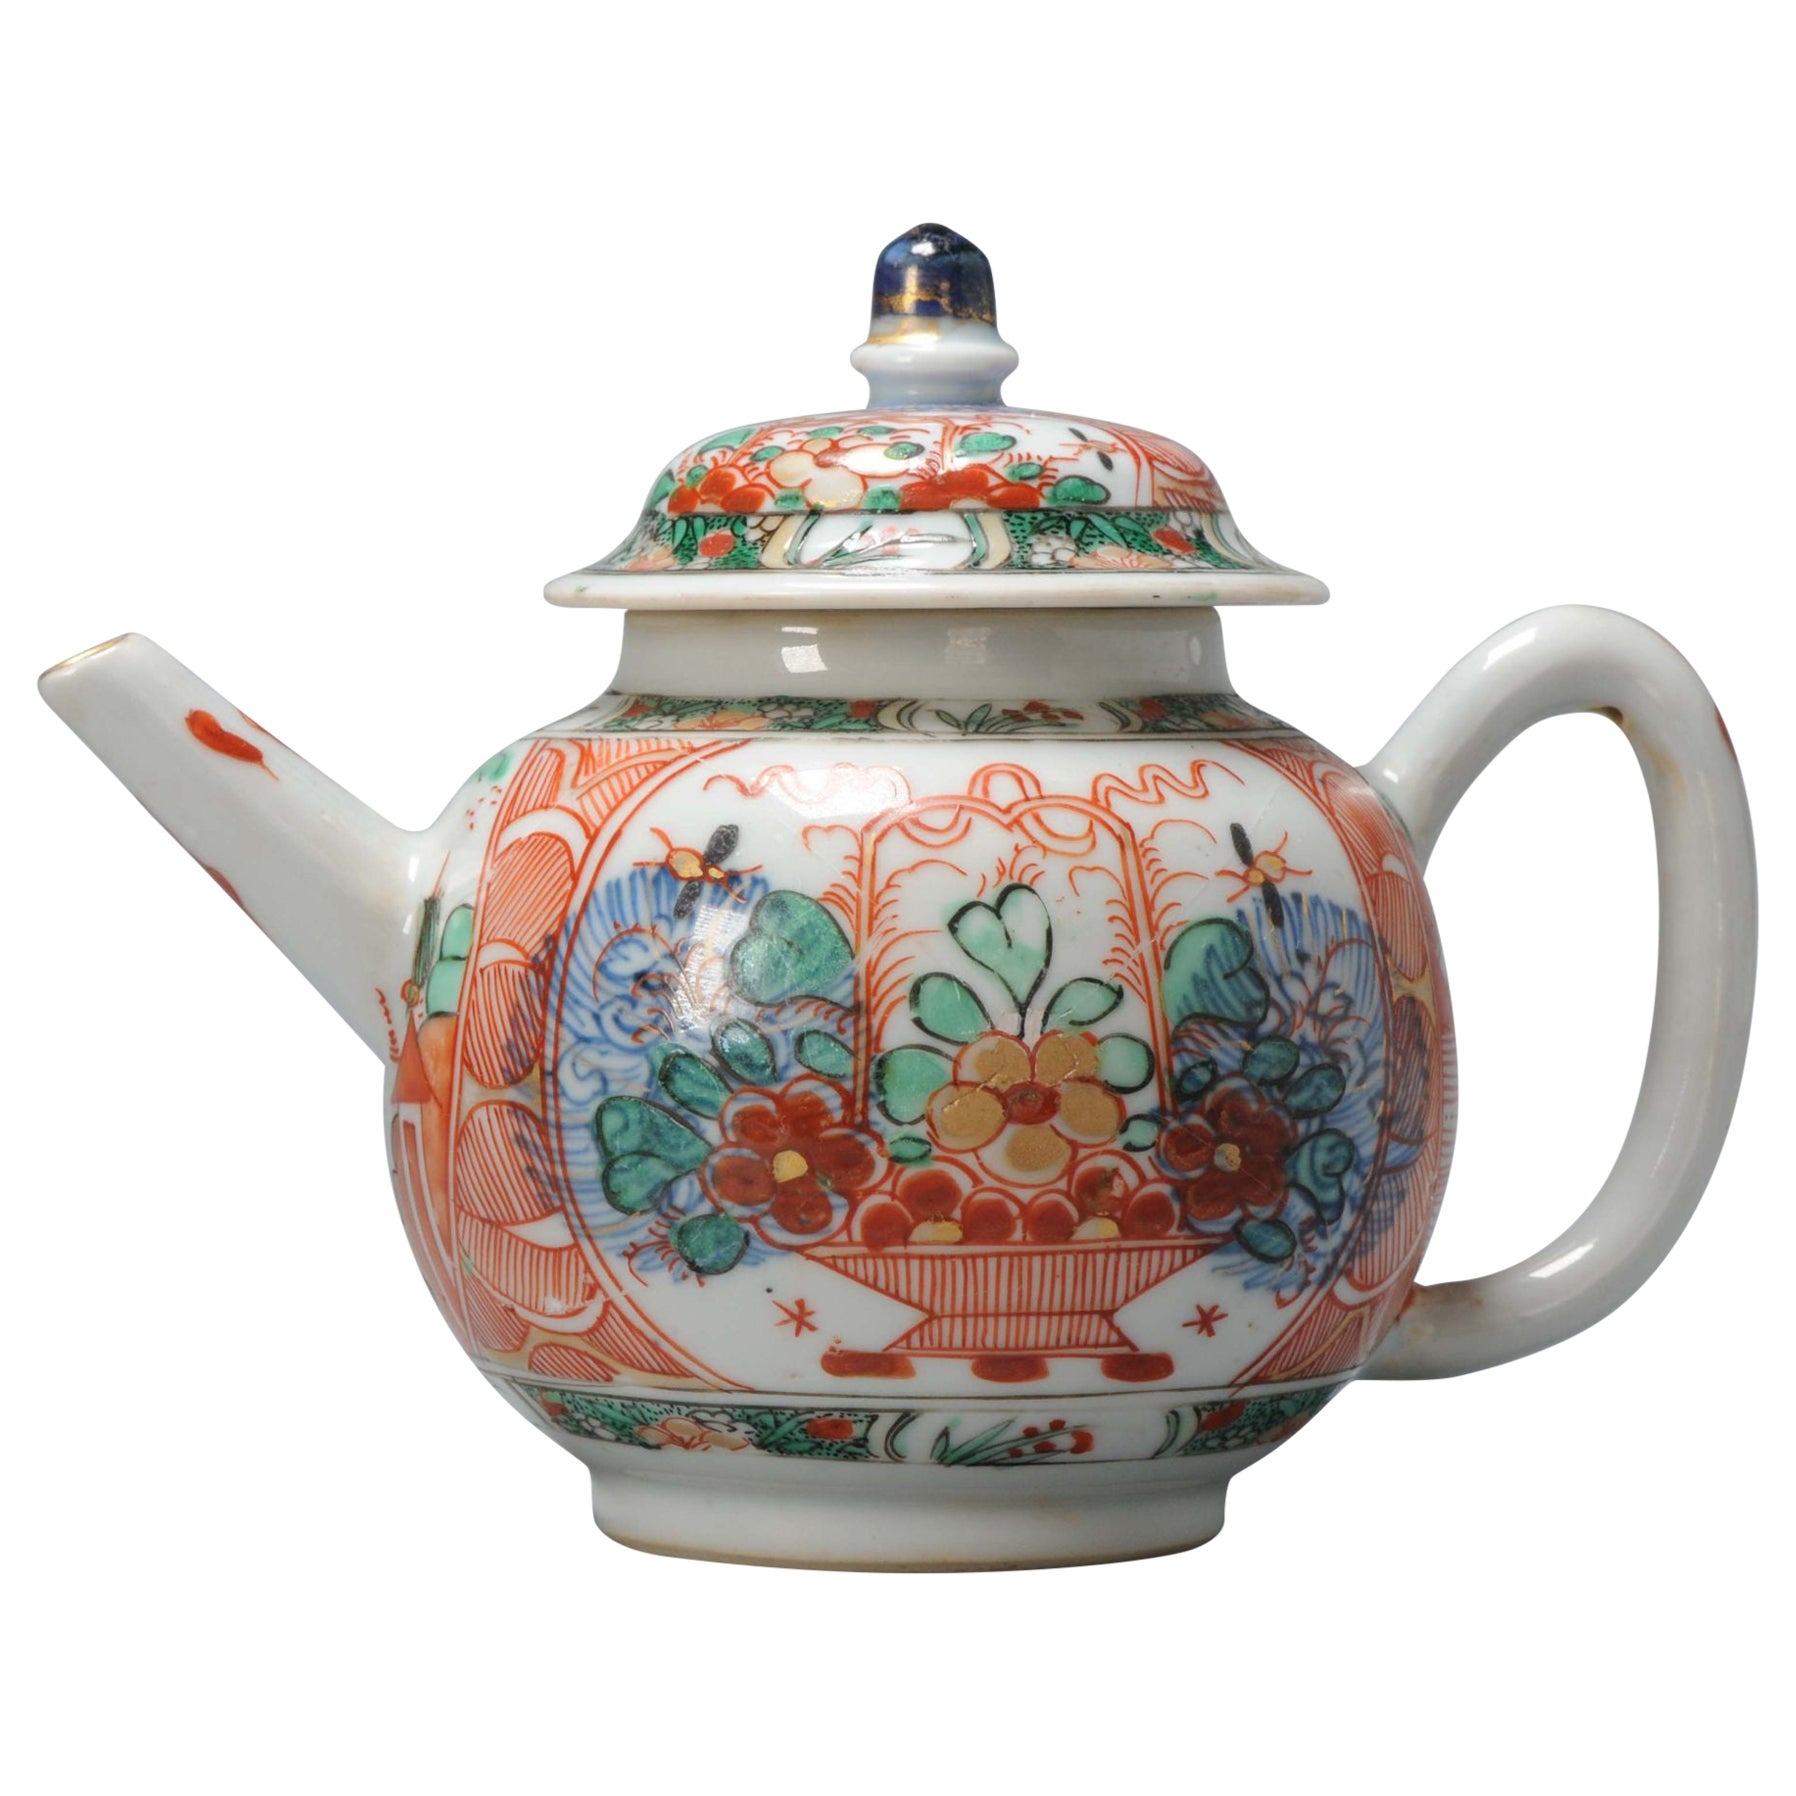 Antique Chinese Teapot Kangxi/Yongzheng Imari Amsterdam Bont Qing